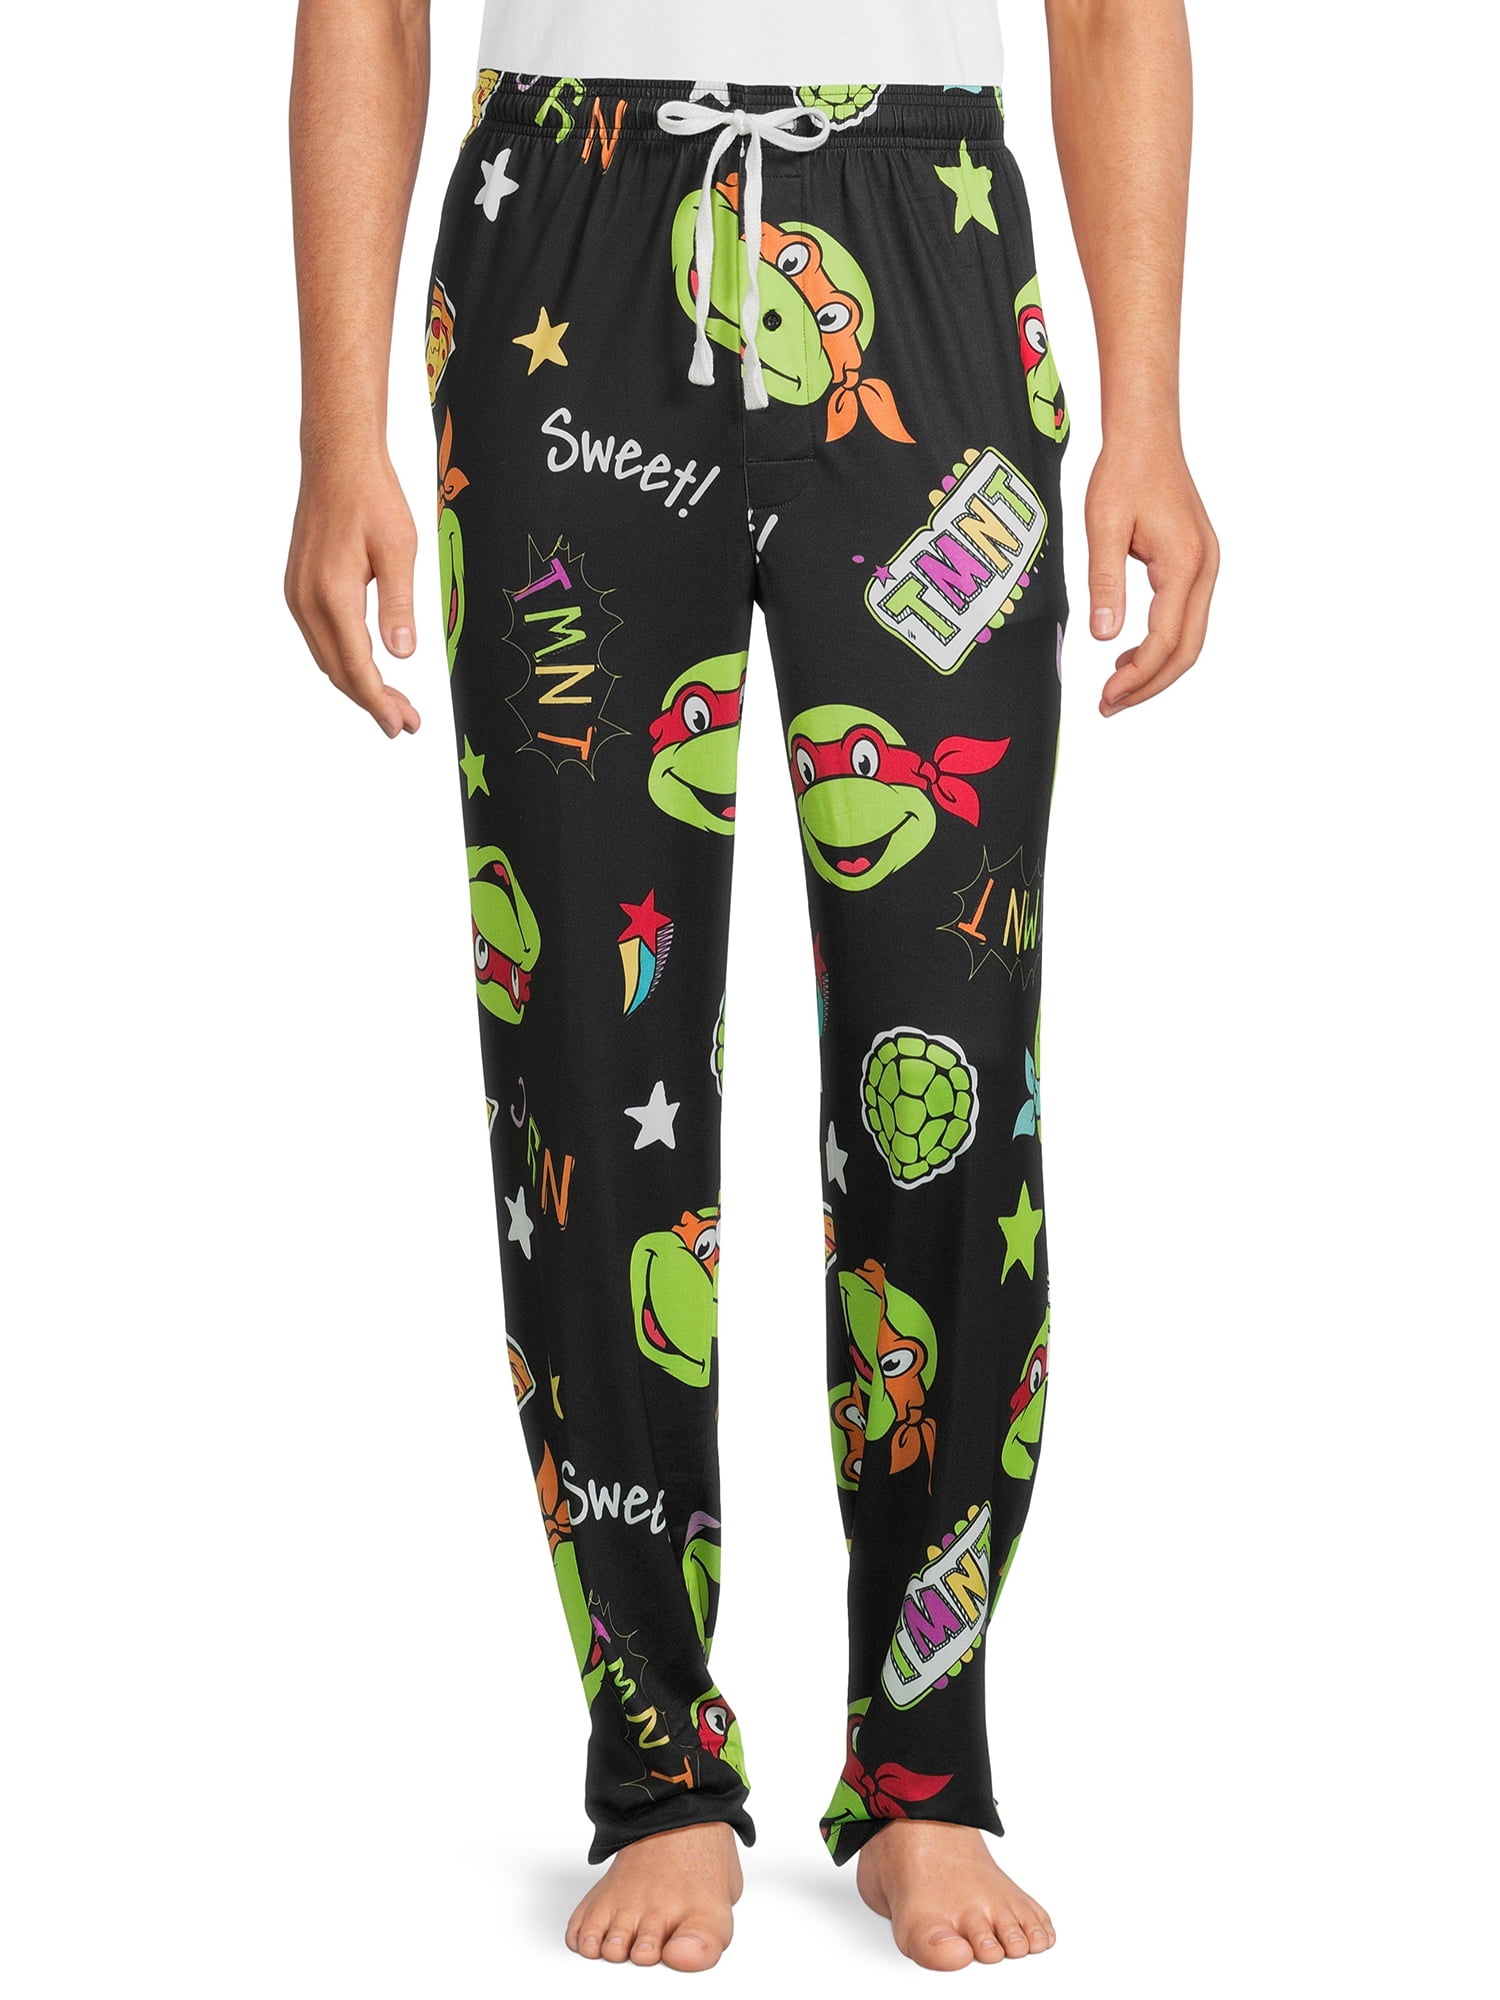 Teenage Mutant Ninja Turtles TMNT Pajama Pants Pjs 100% Cotton Boys Size 6  EUC